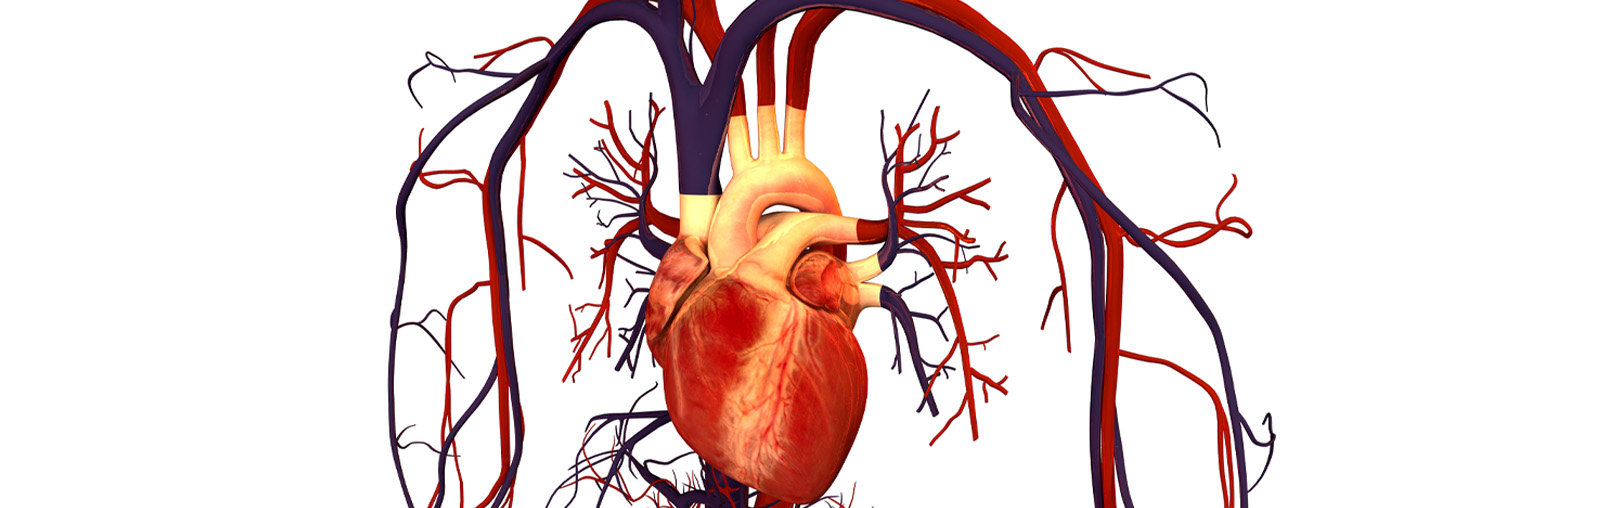 cardio vascular